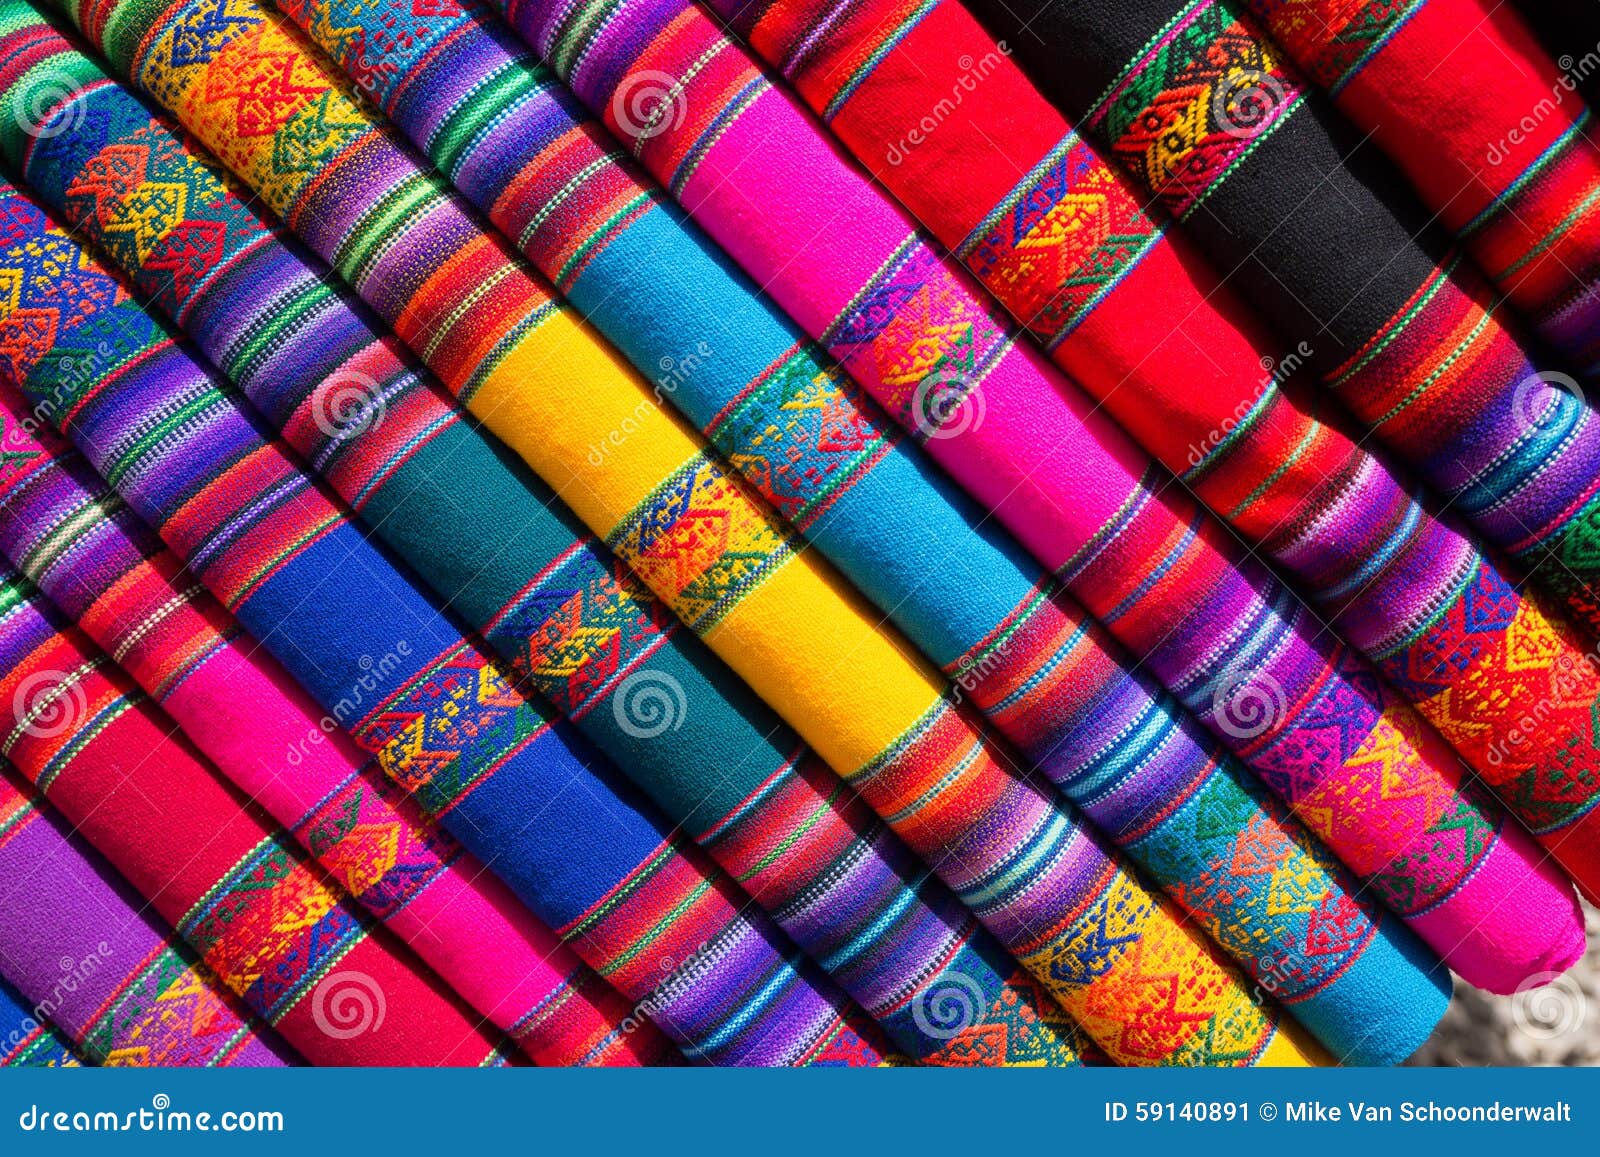 χρωματισμένο ύφασμα. Χρωματισμένο ύφασμα όπως βλέπει σε μια από τις αγορές στο Περού